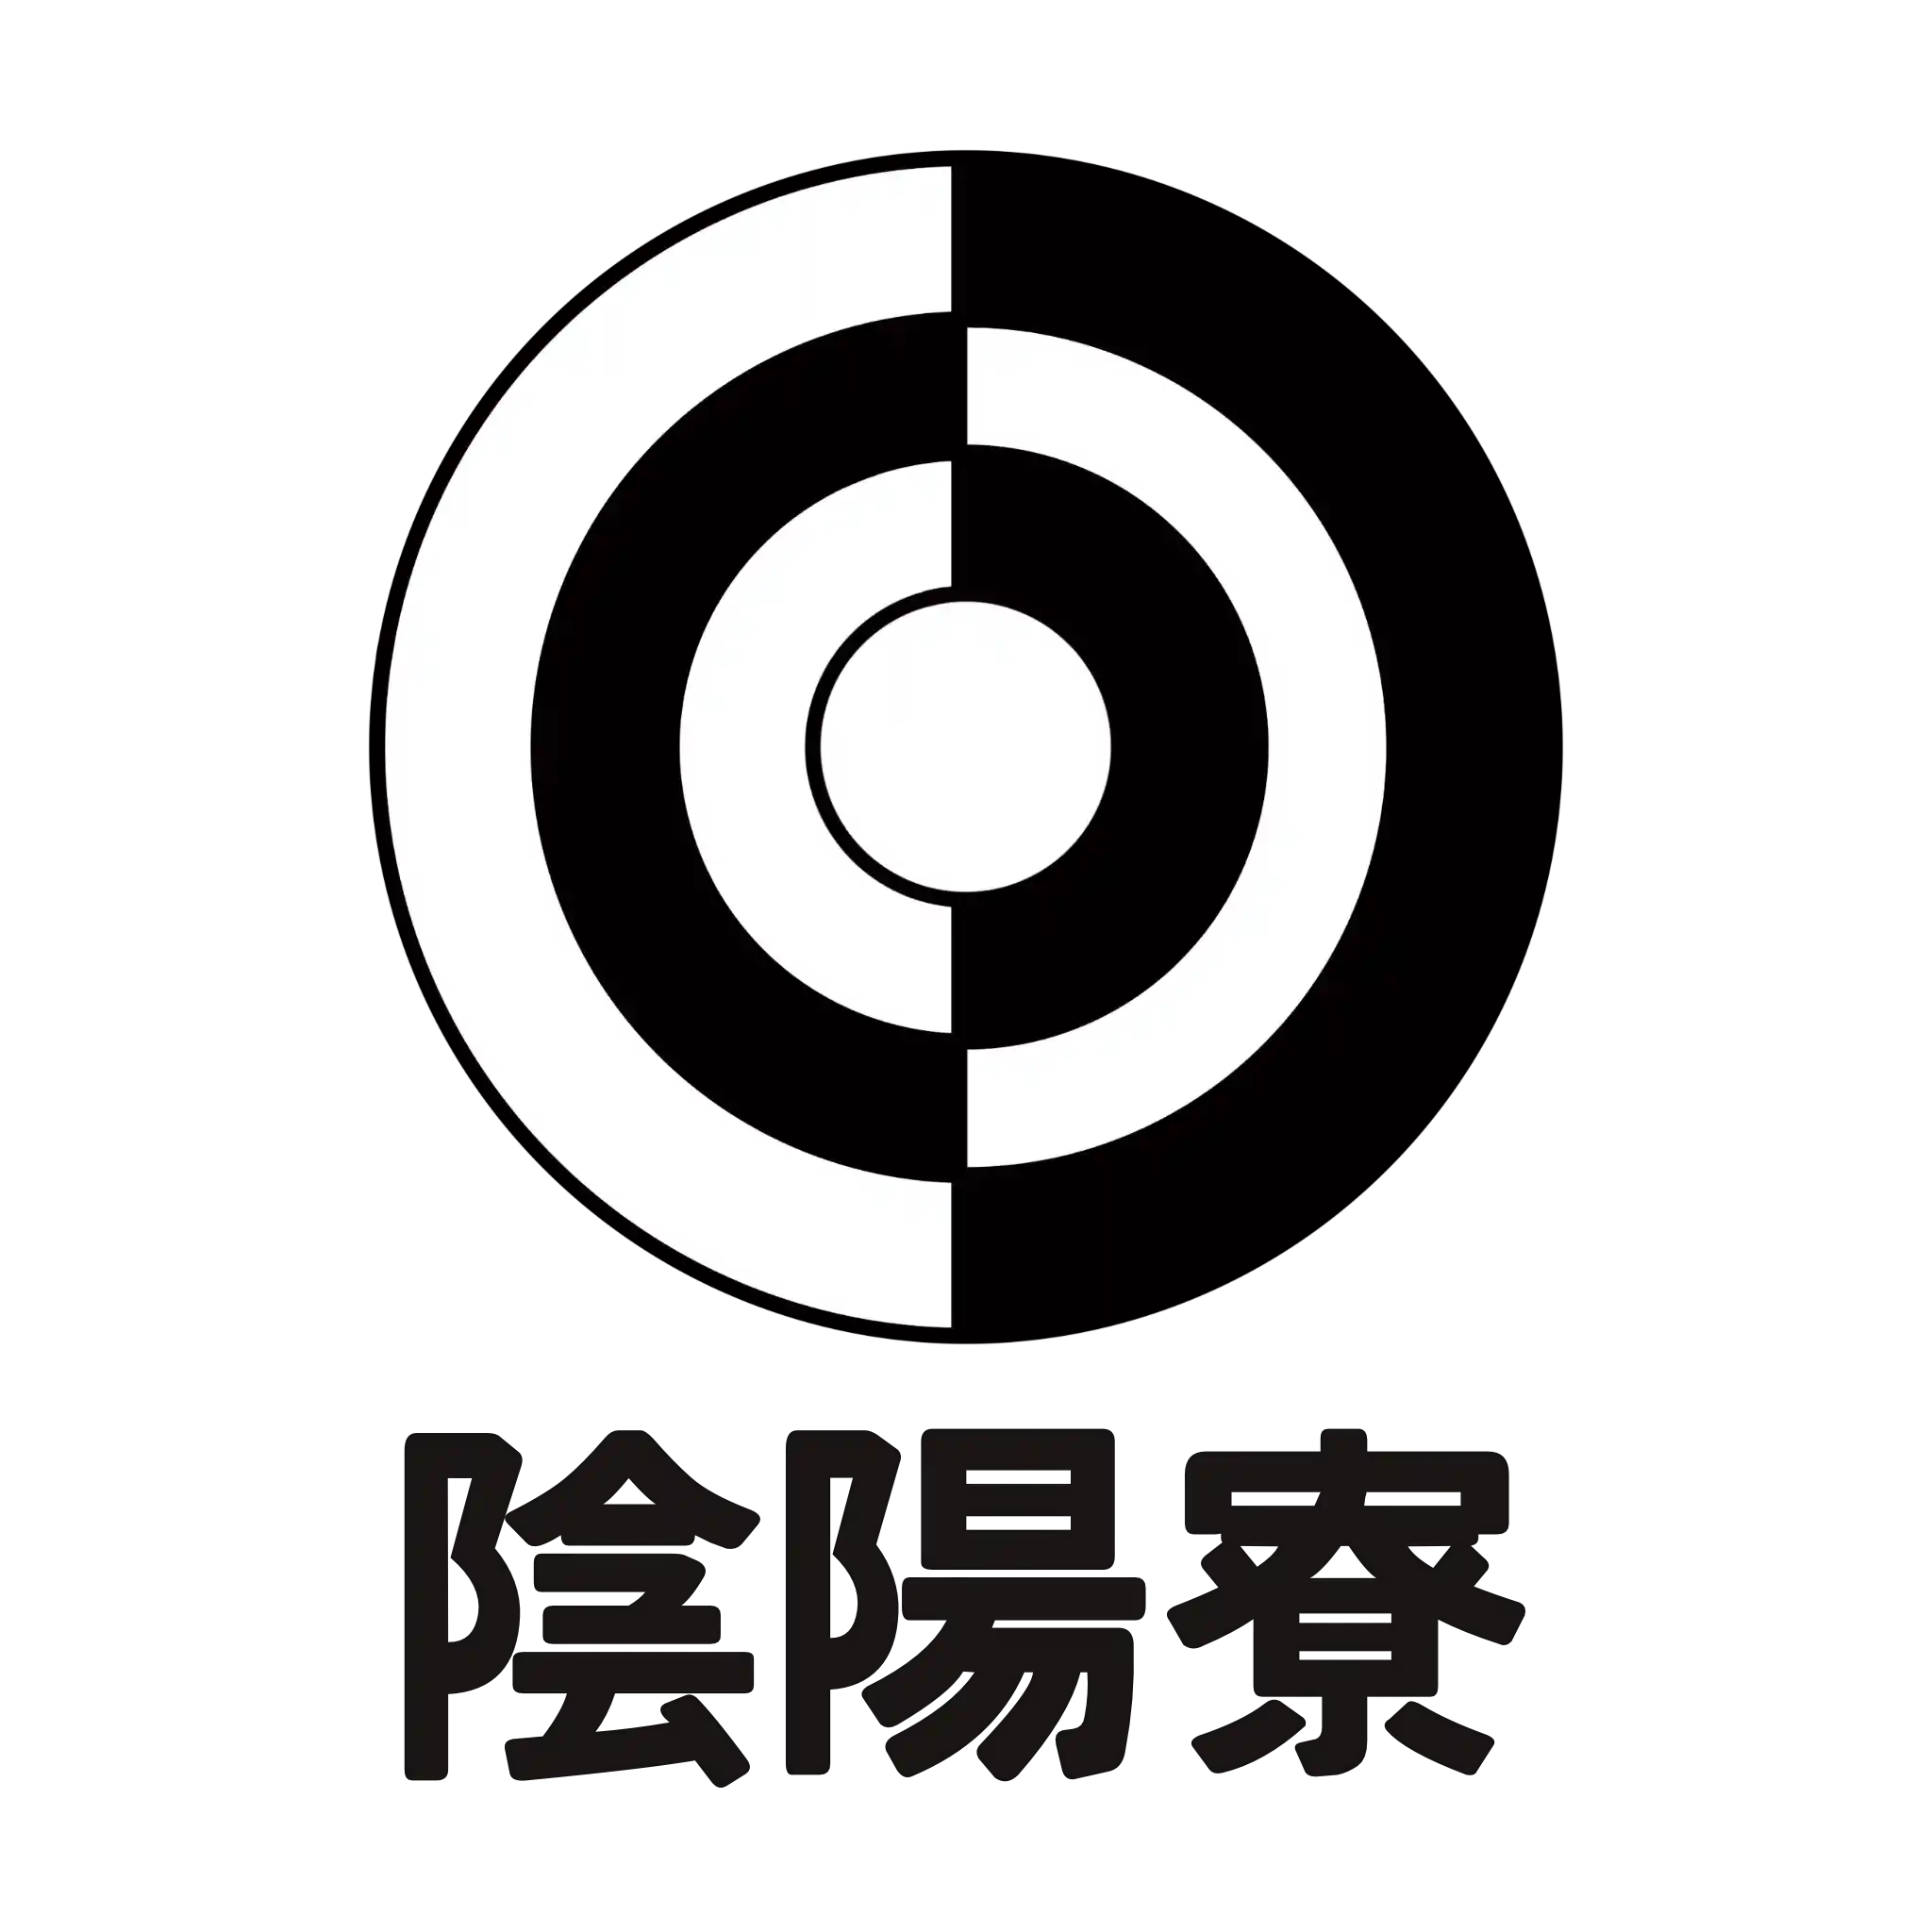 Bureau_of_Onmyo_logo.png